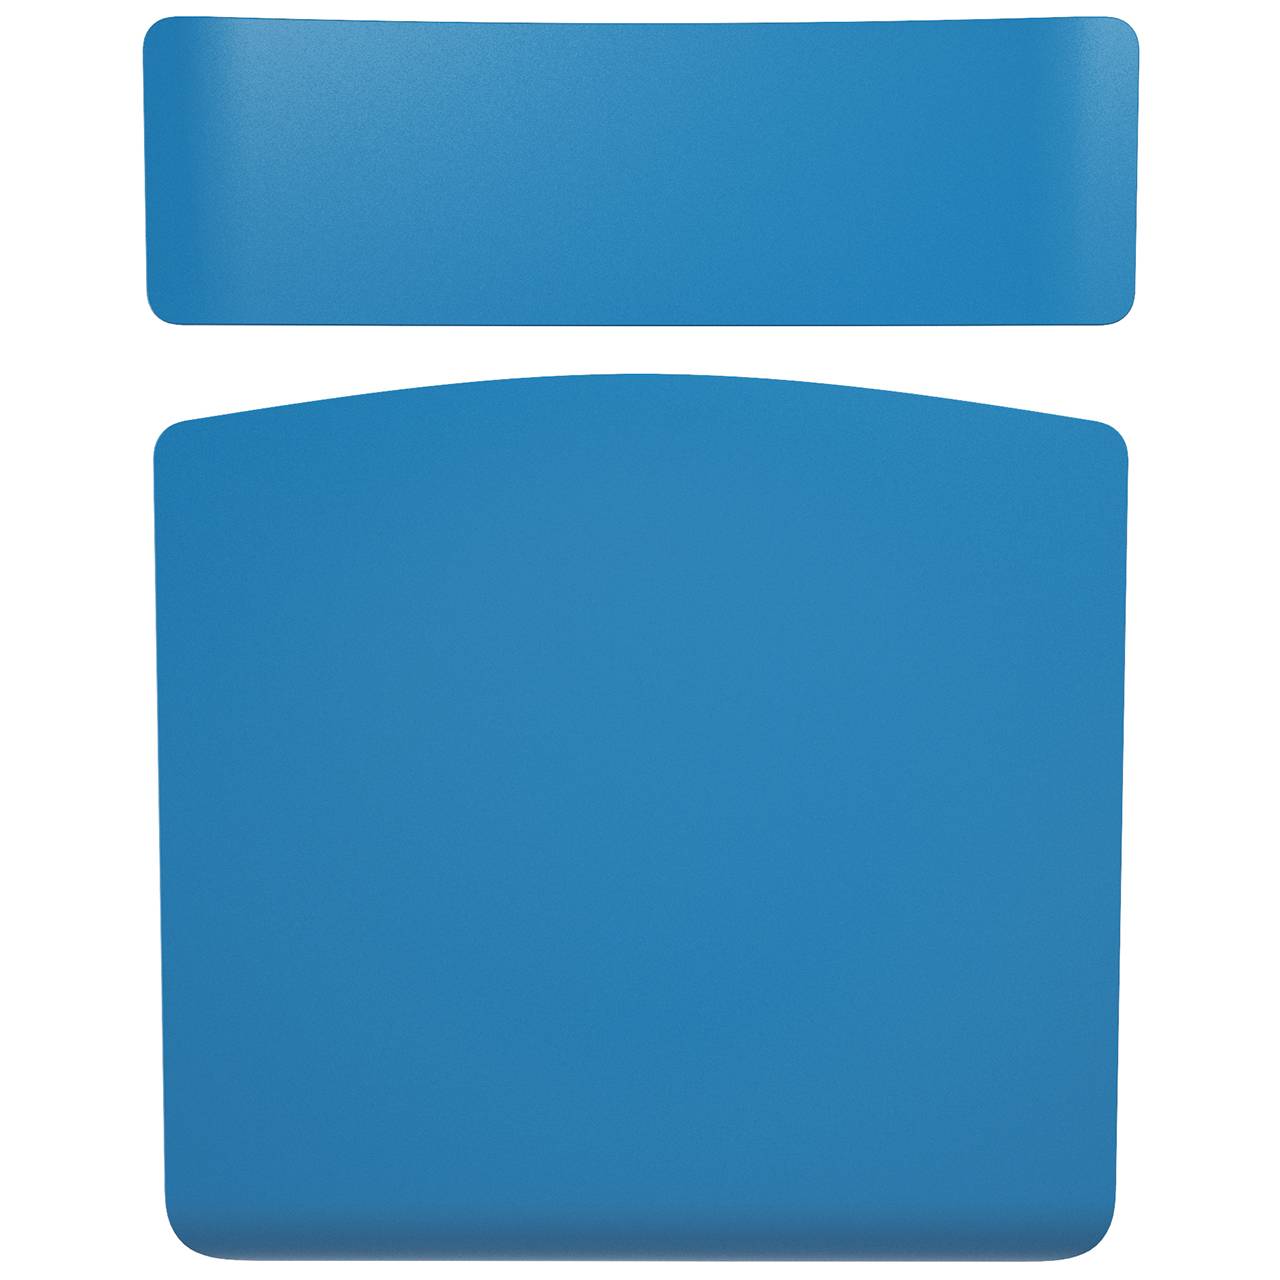 Стул ученический регулируемый (гр. 2-4, 3-5, 4-6 или 5-7) серый Синий 2-4 прямоугольная